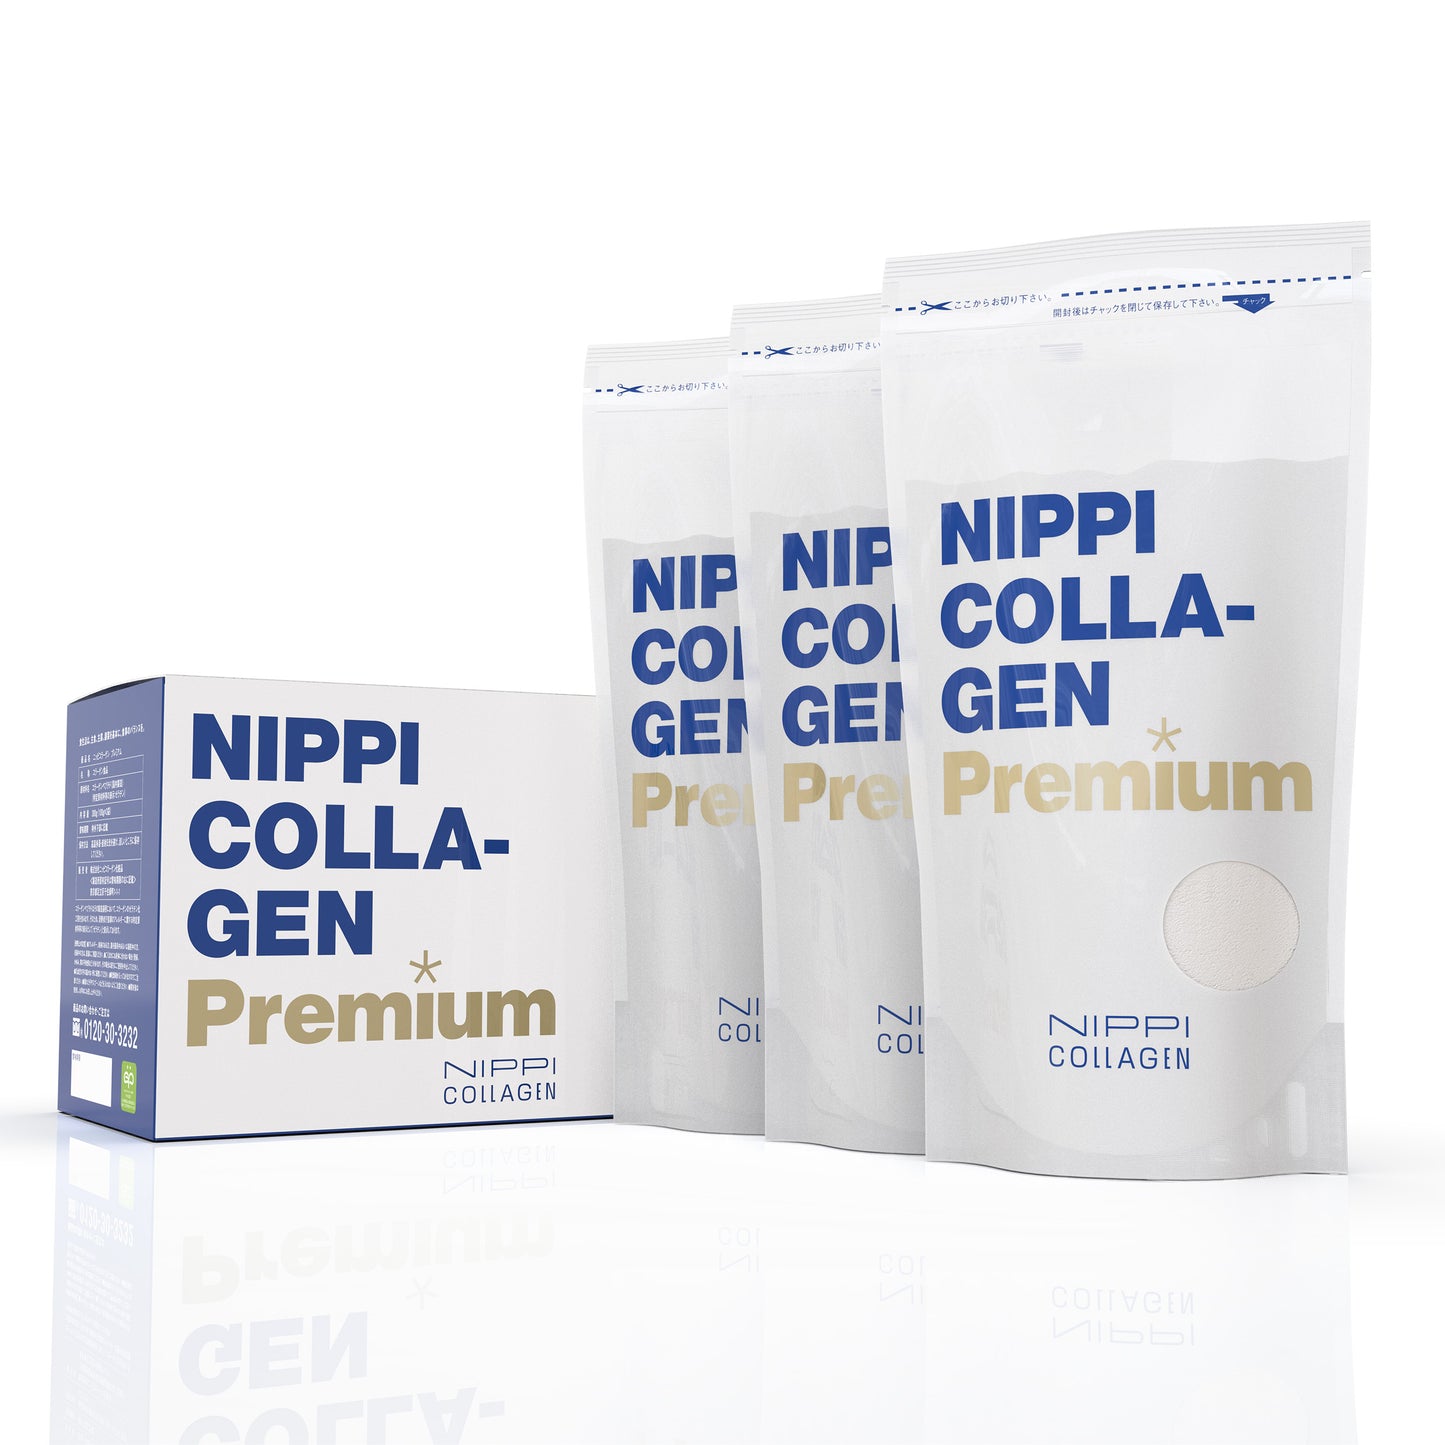 Nippi Collagen 升級版 (健康系列)